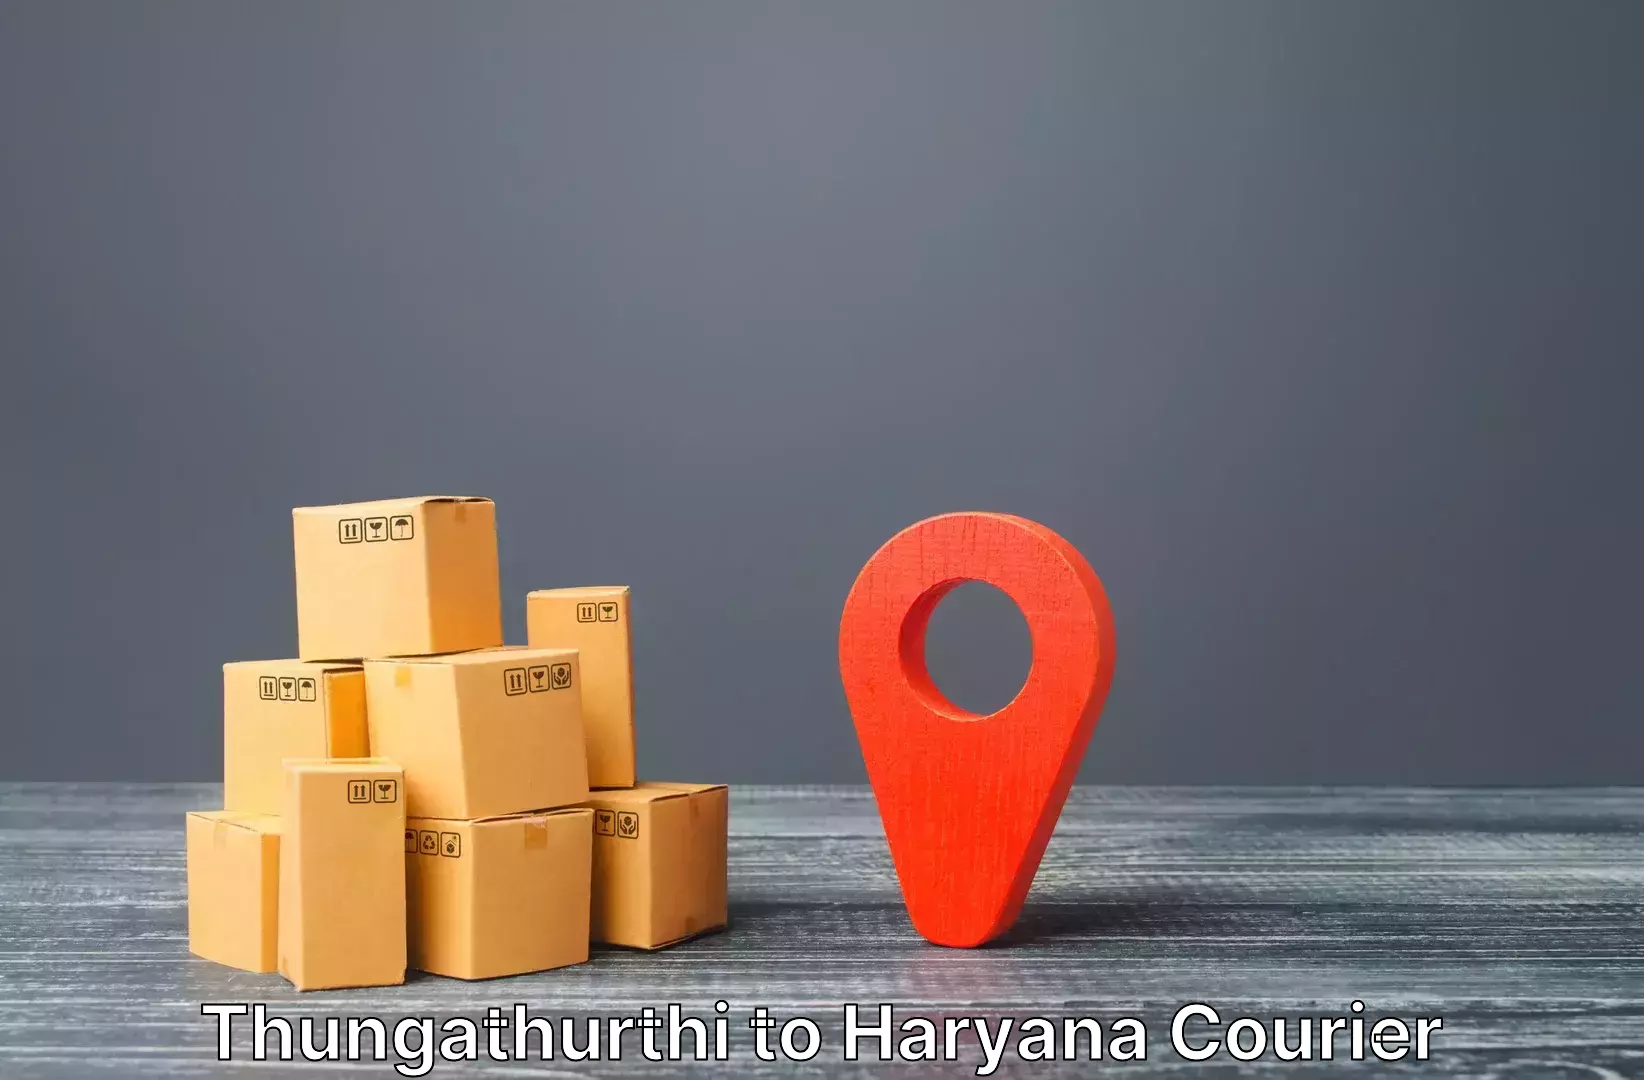 Express luggage delivery Thungathurthi to Gohana